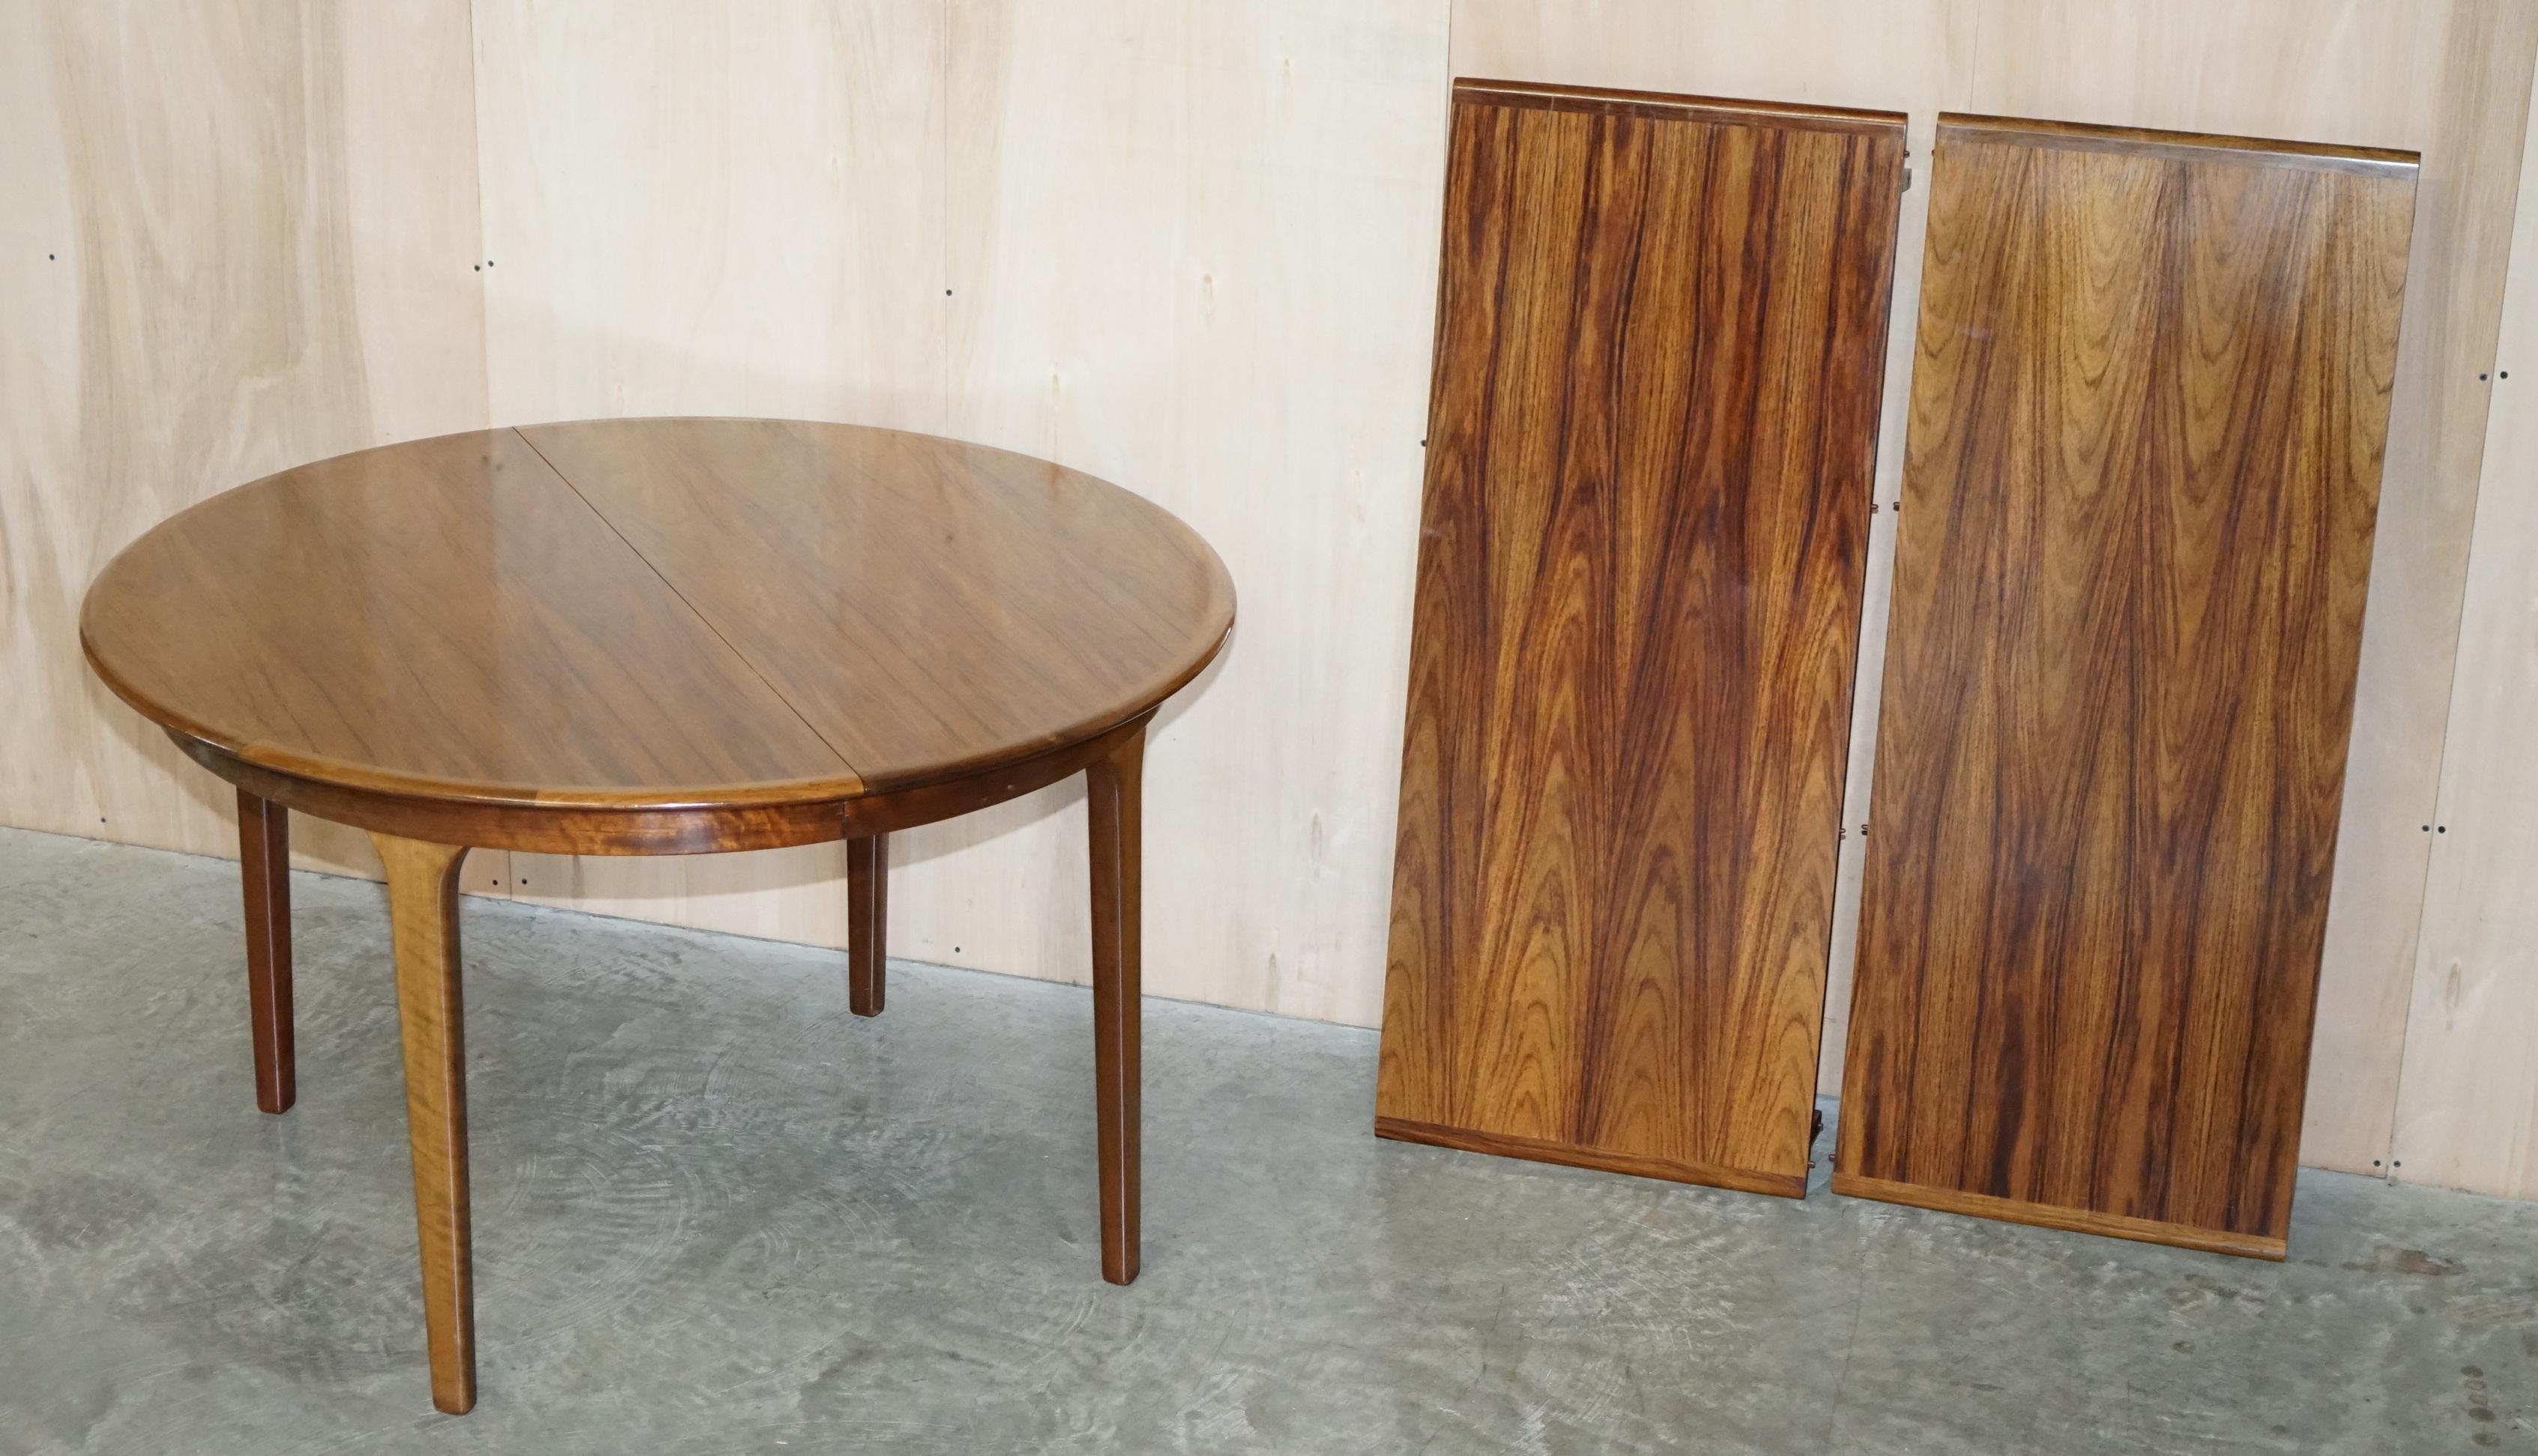 Nous sommes ravis de proposer à la vente cette superbe table de salle à manger en bois de rose danois, moderne du milieu du siècle, de marque C.J Rosengaard, qui peut accueillir jusqu'à huit personnes lorsqu'elle est entièrement déployée.

Très